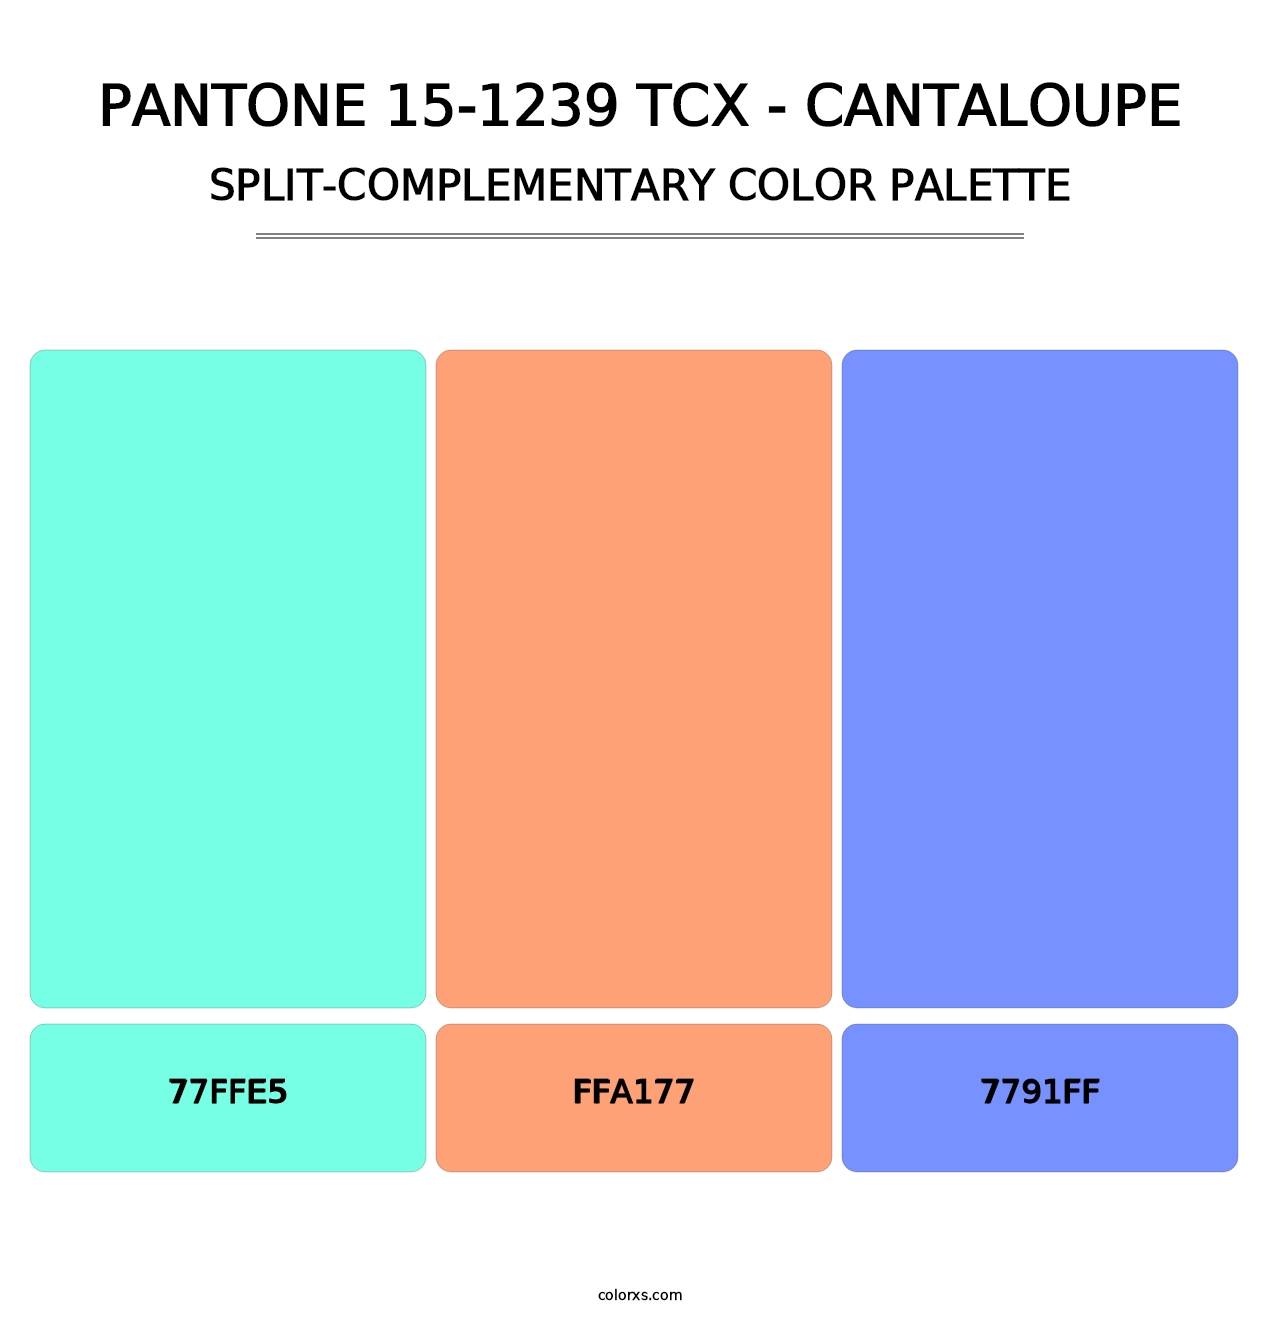 PANTONE 15-1239 TCX - Cantaloupe - Split-Complementary Color Palette